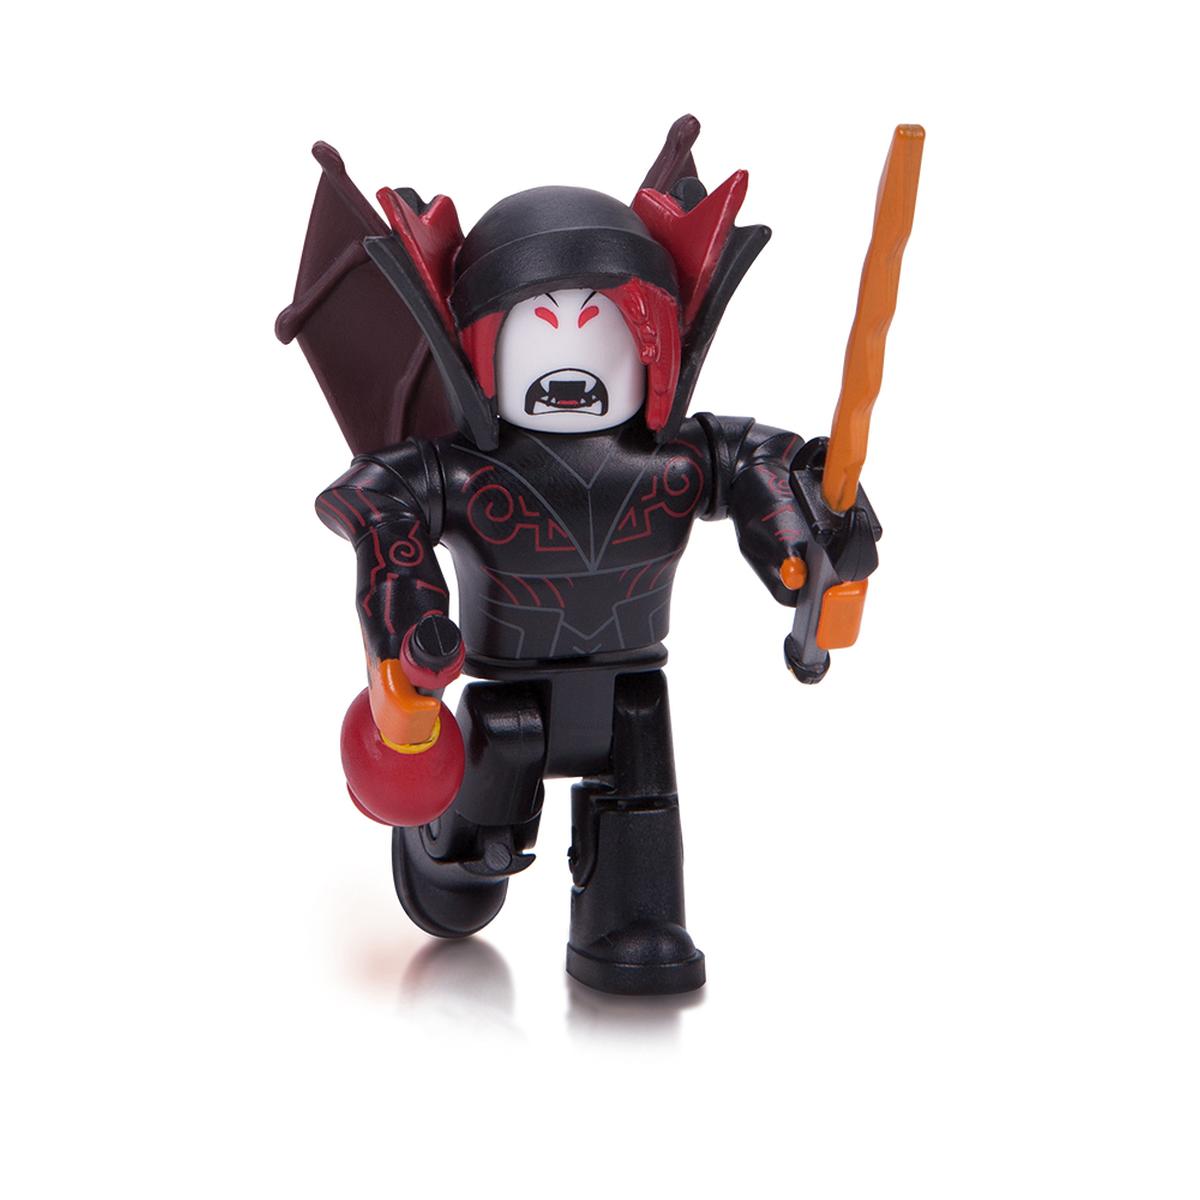 Roblox Hunted Vampire Figura Y Accesorio - roblox hunted vampire figura y accesorio